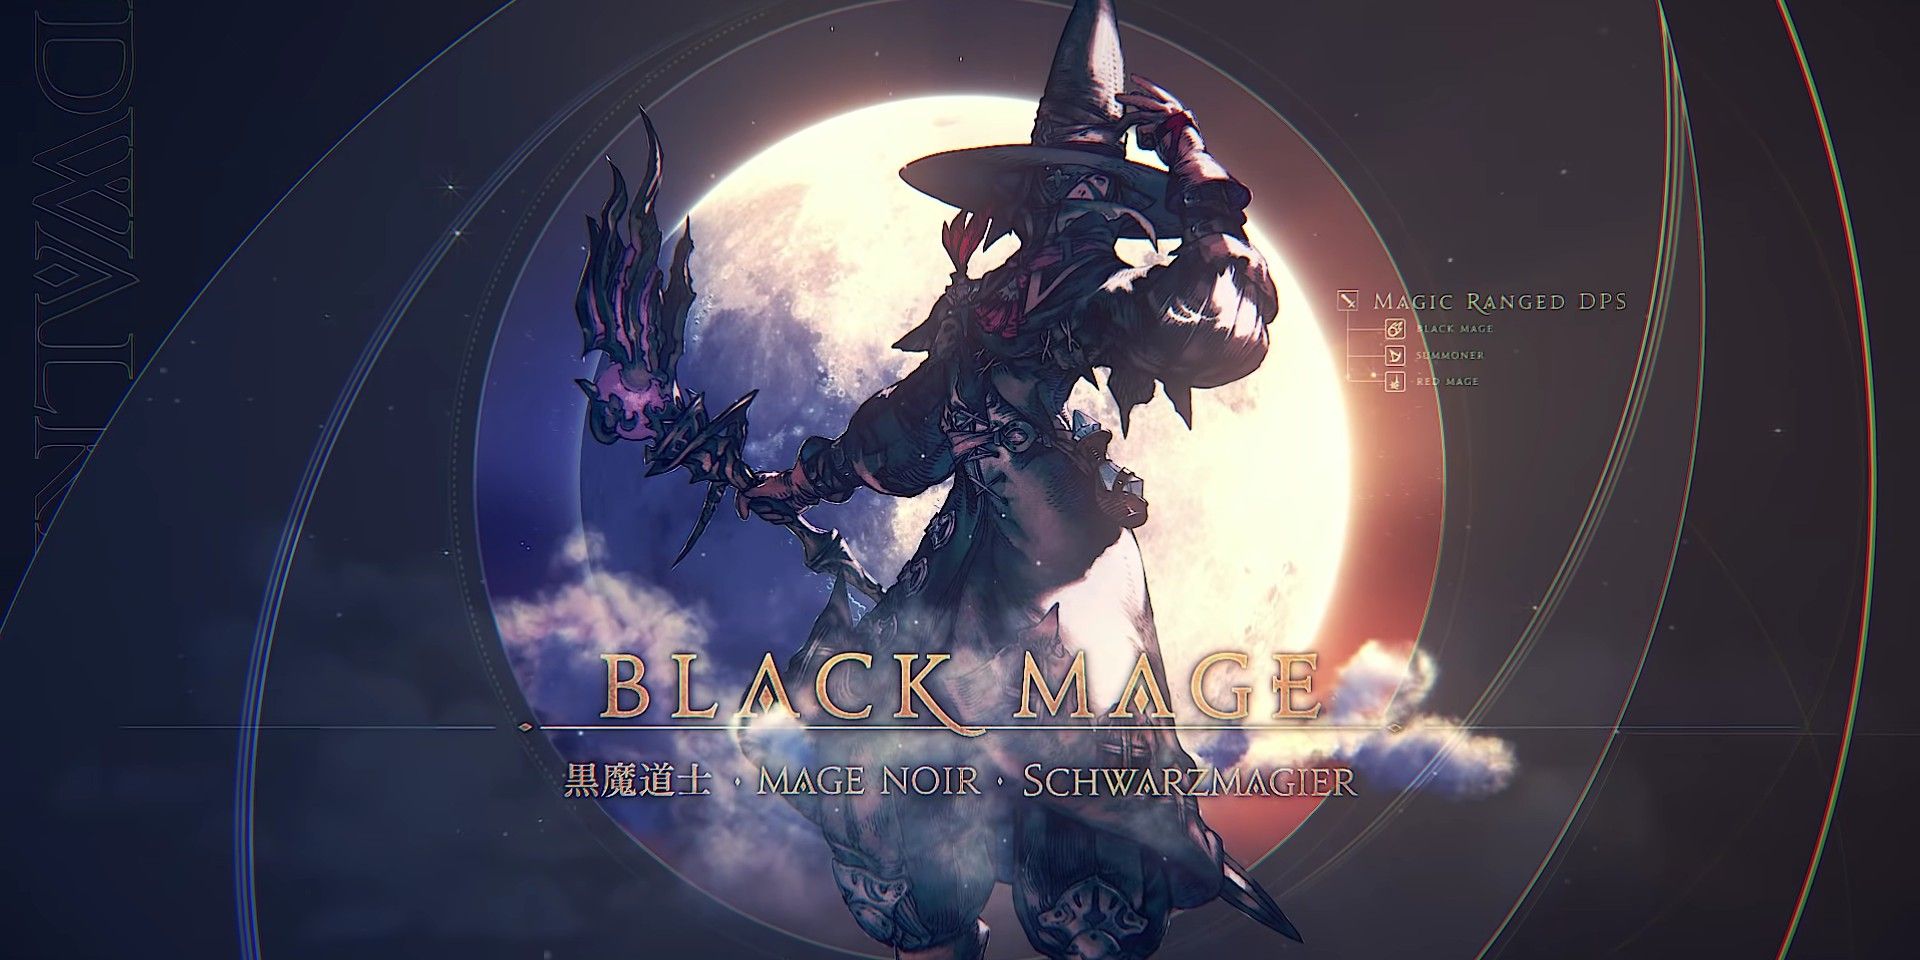 Final Fantasy XIV Endwalker Black Mage In Job Changes Video